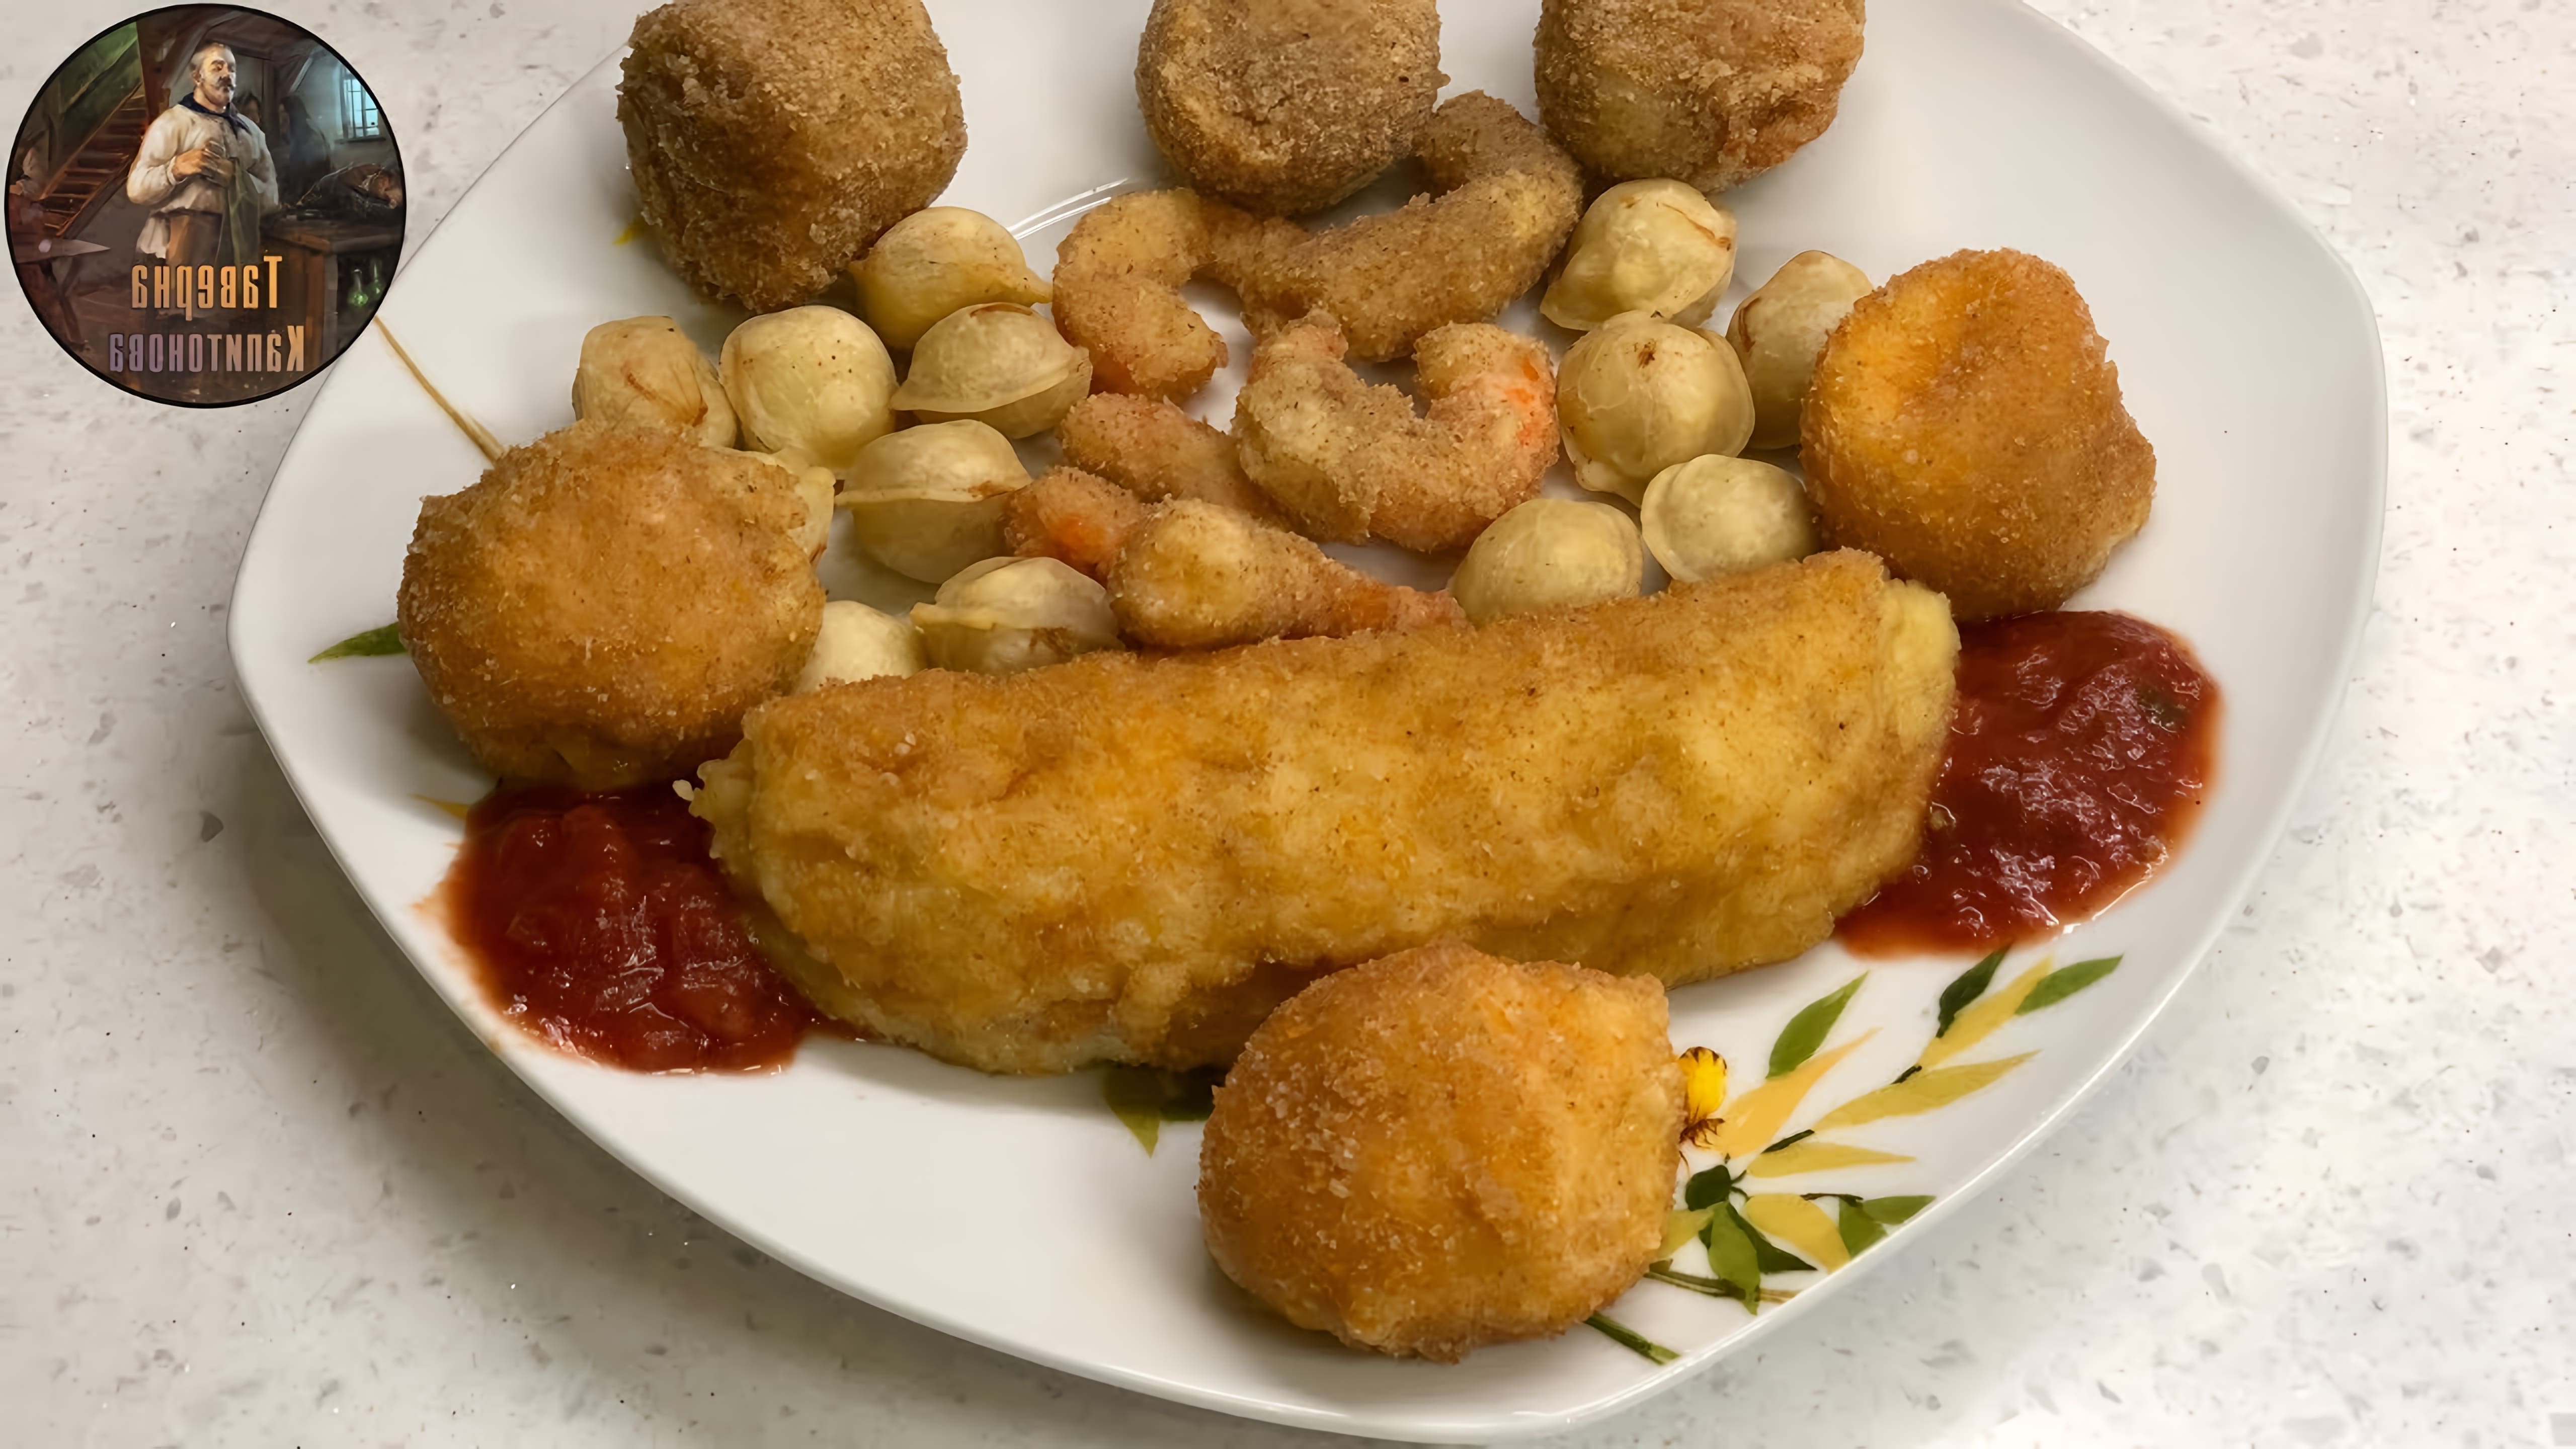 В этом видео автор готовит пять блюд во фритюре: пельмени, сырные шарики, картофельные палочки, креветки в кляре и мини-хот-доги